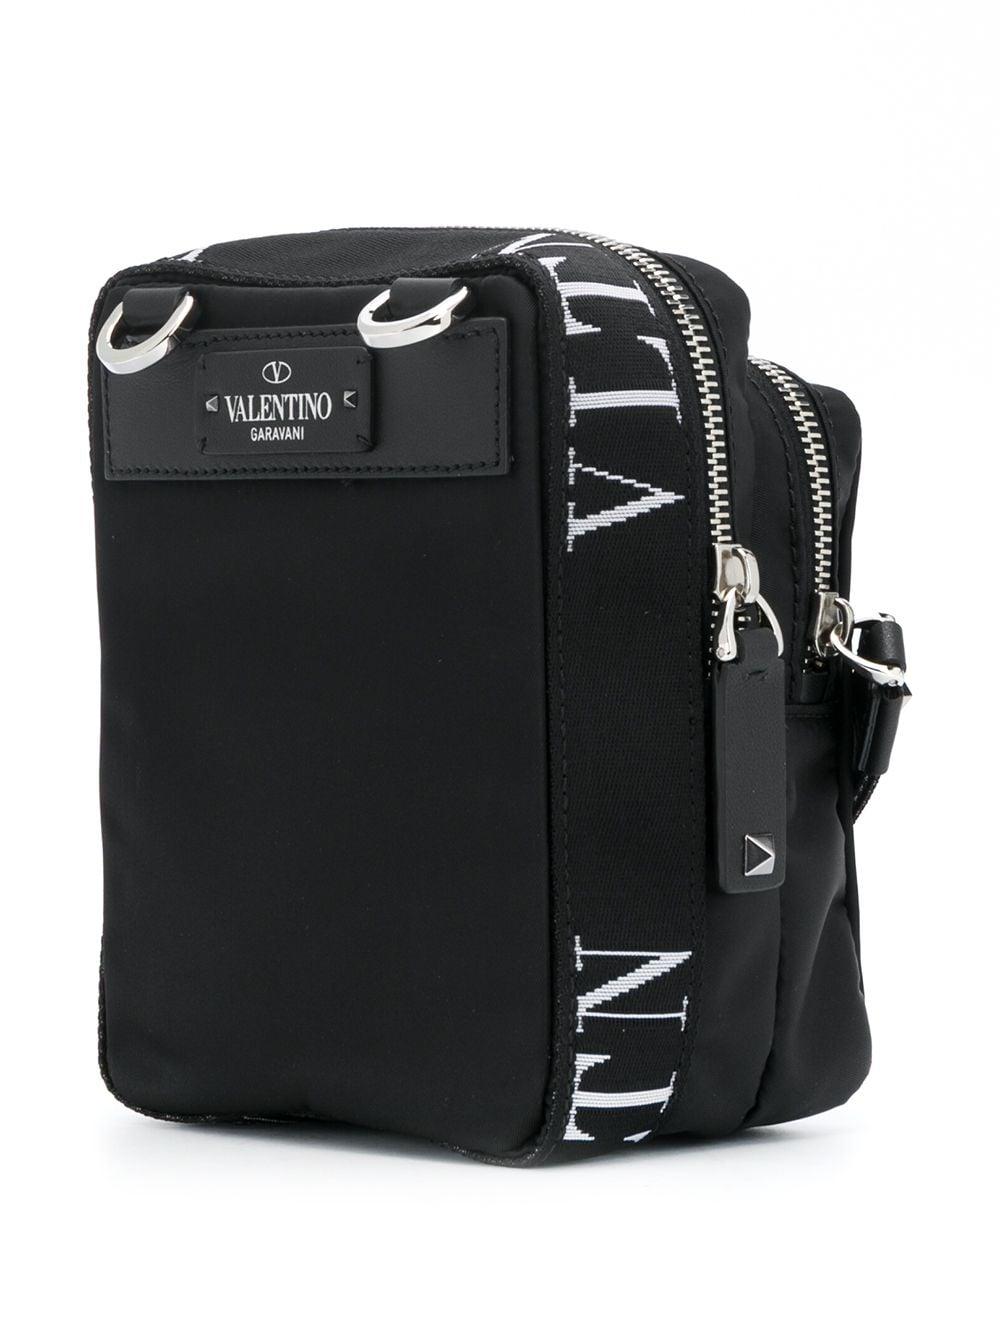 Valentino Vltn Print Messenger Bag in Black for Men - Lyst